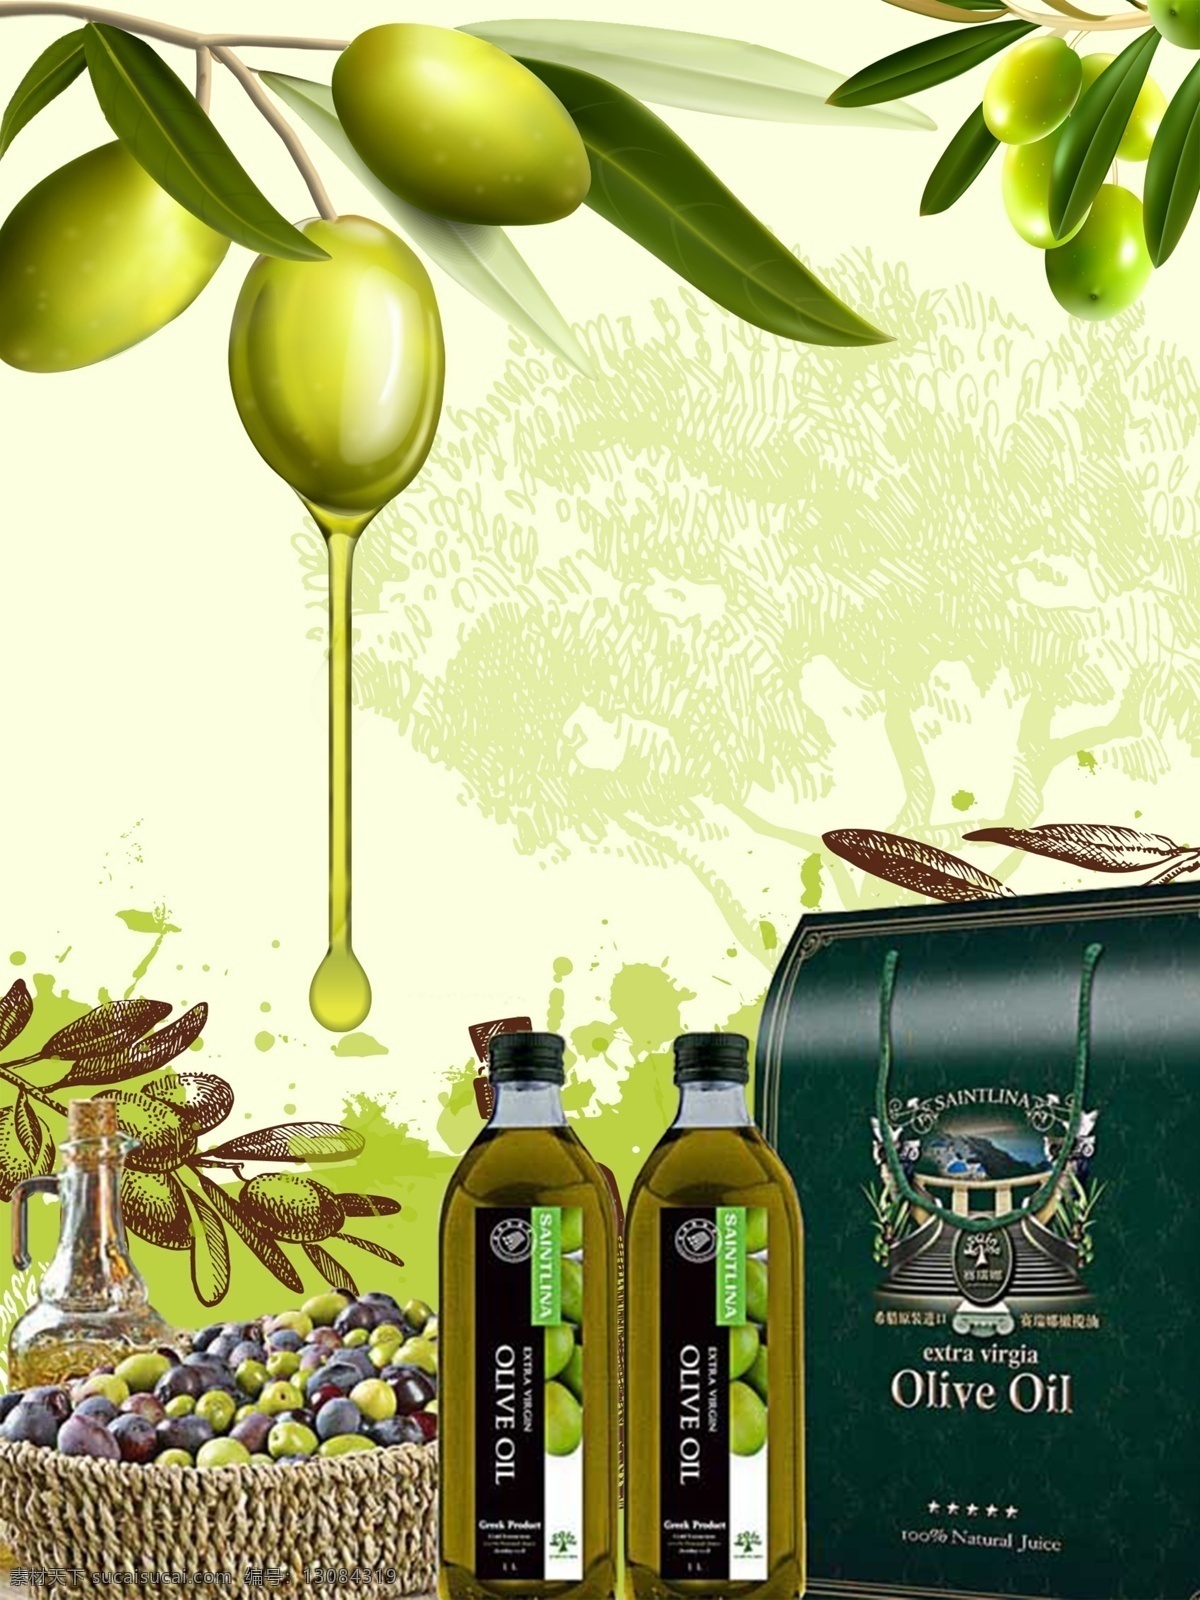 橄榄油 包装 广告 海报 橄榄油包装 橄榄油海报 橄榄油广告 食用油 生活百科 餐饮美食